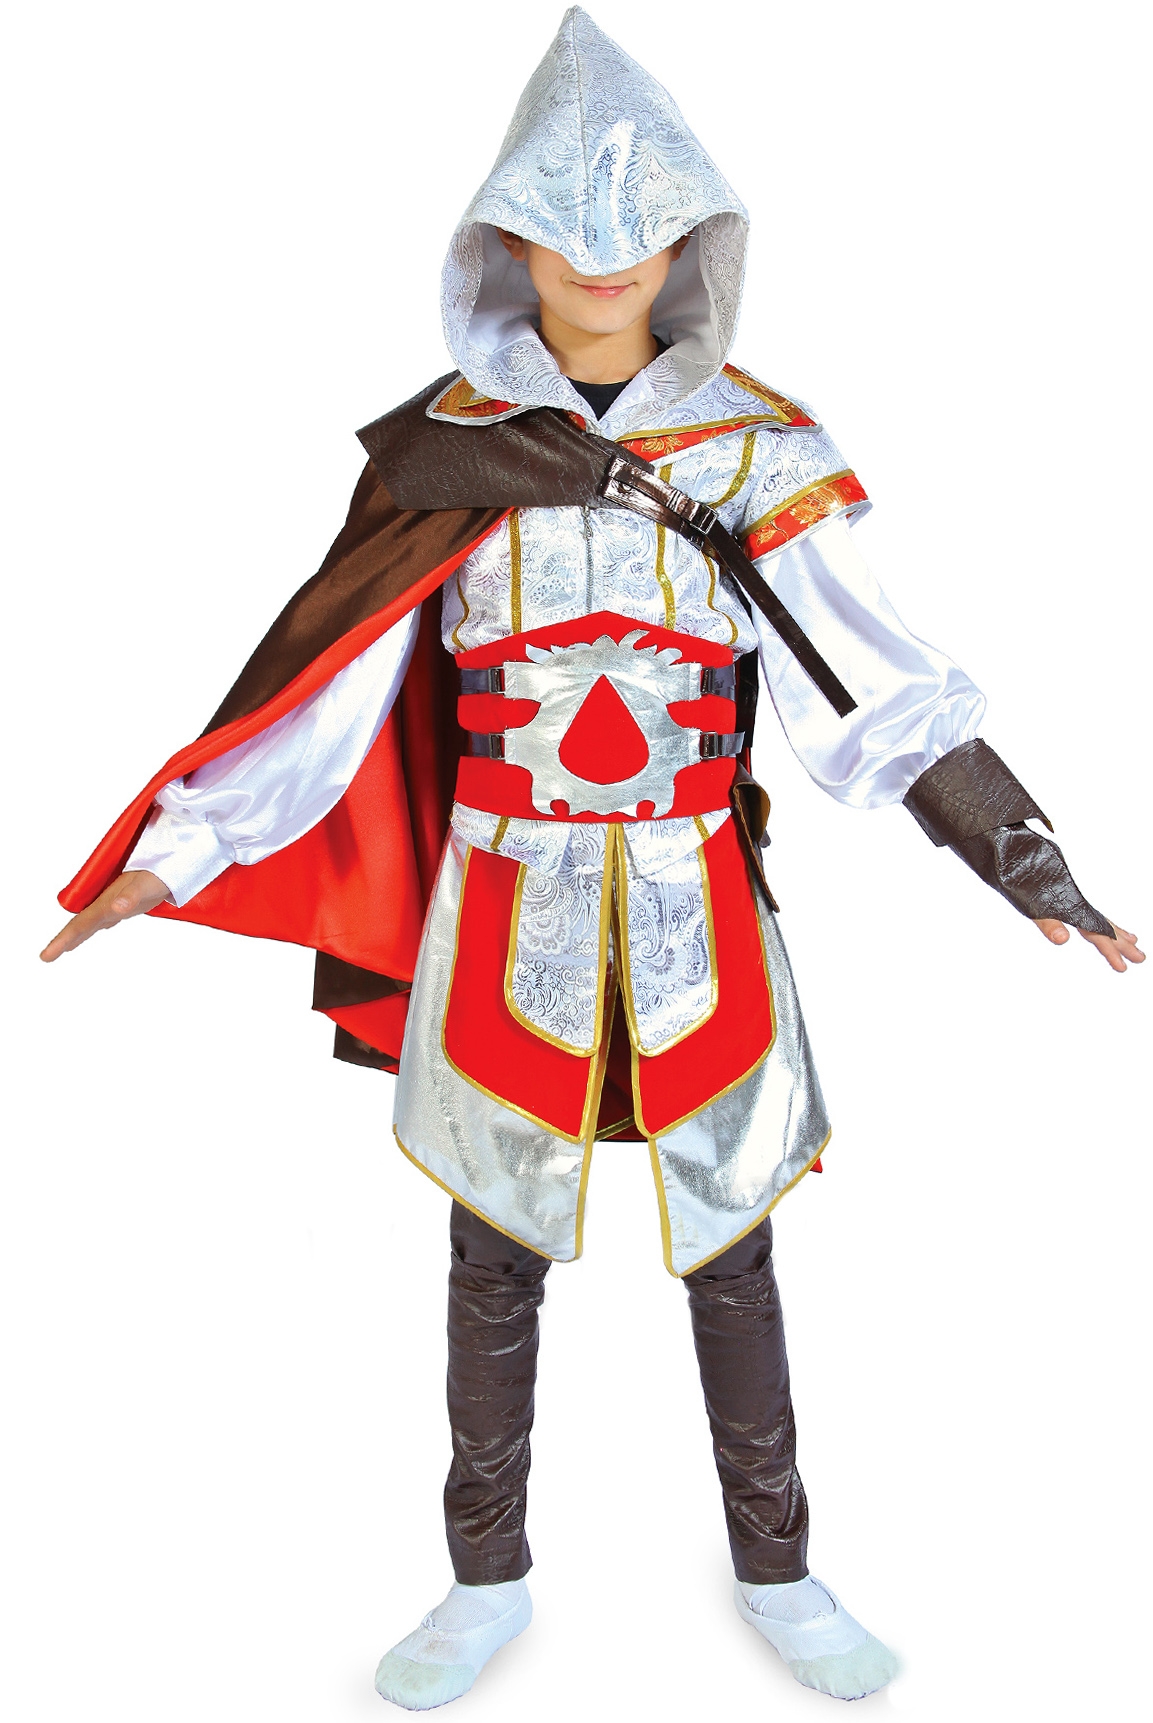 Детский костюм Ассасина состоит из туники с капюшоном, килта, пояса, наклад...